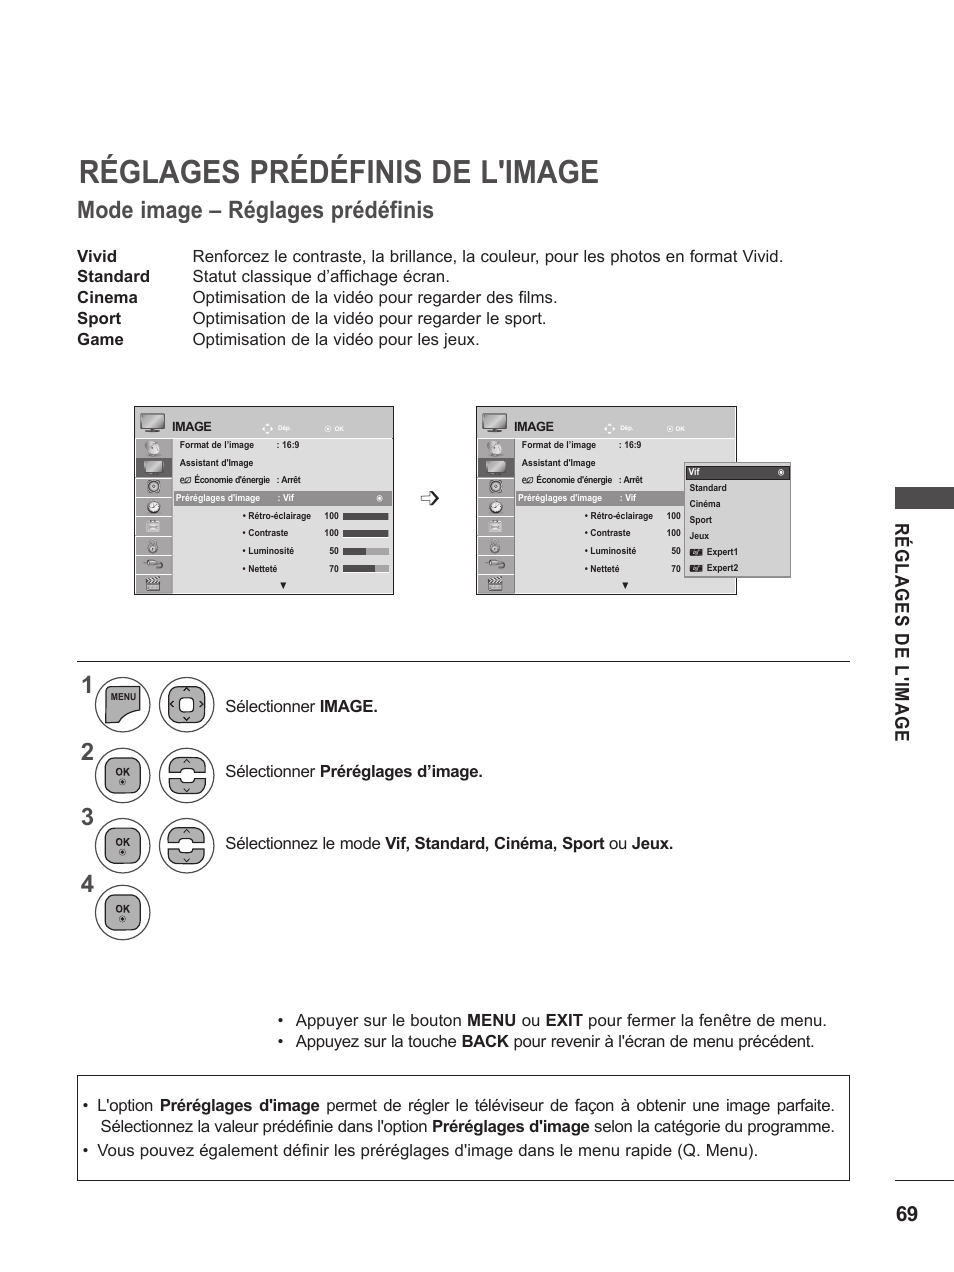 Réglages prédéfinis de l'image, Mode image – réglages prédéfinis | LG M2262D-PC Manuel d'utilisation | Page 69 / 154